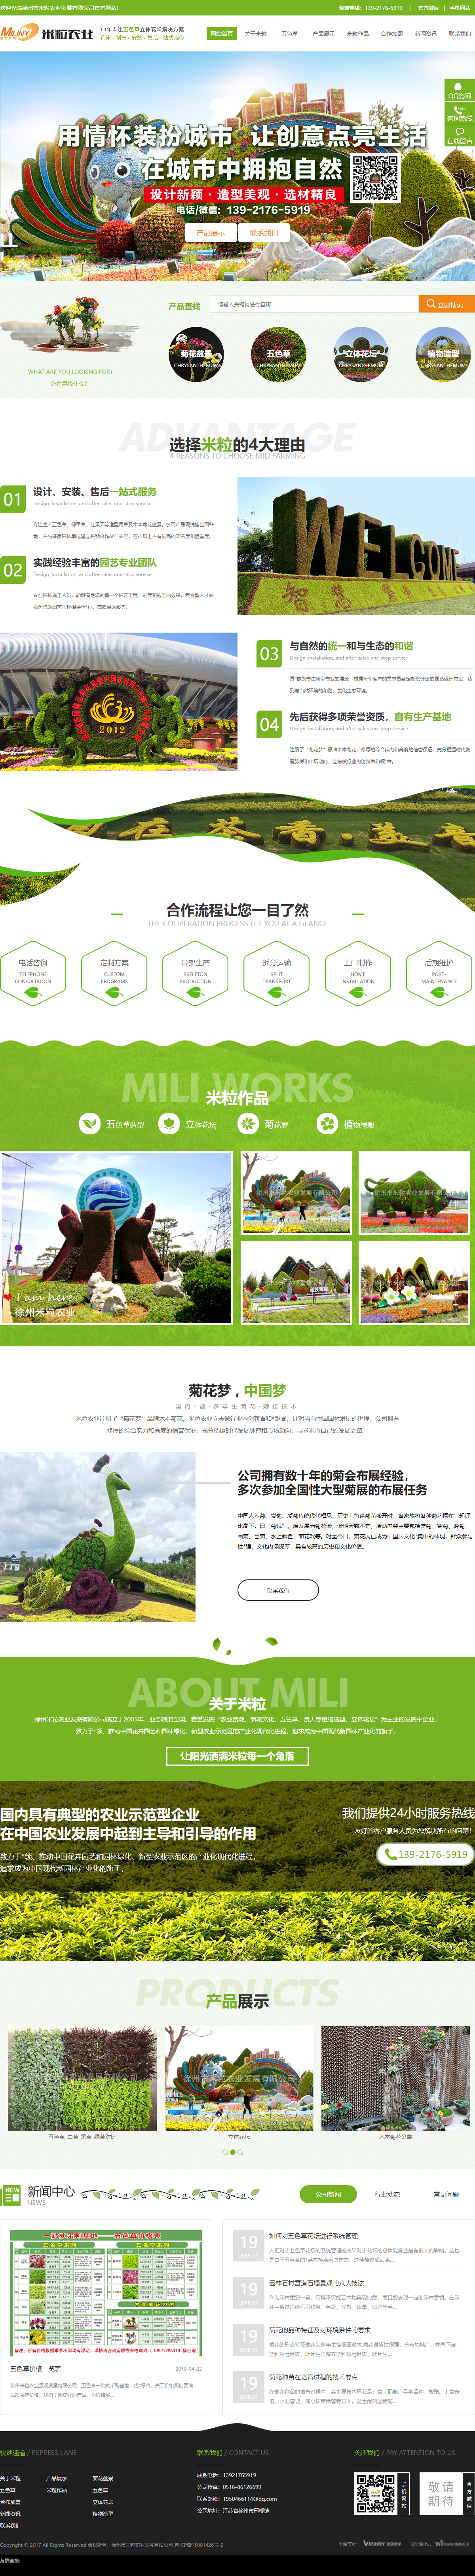 徐州市米粒农业发展有限公司网站案例